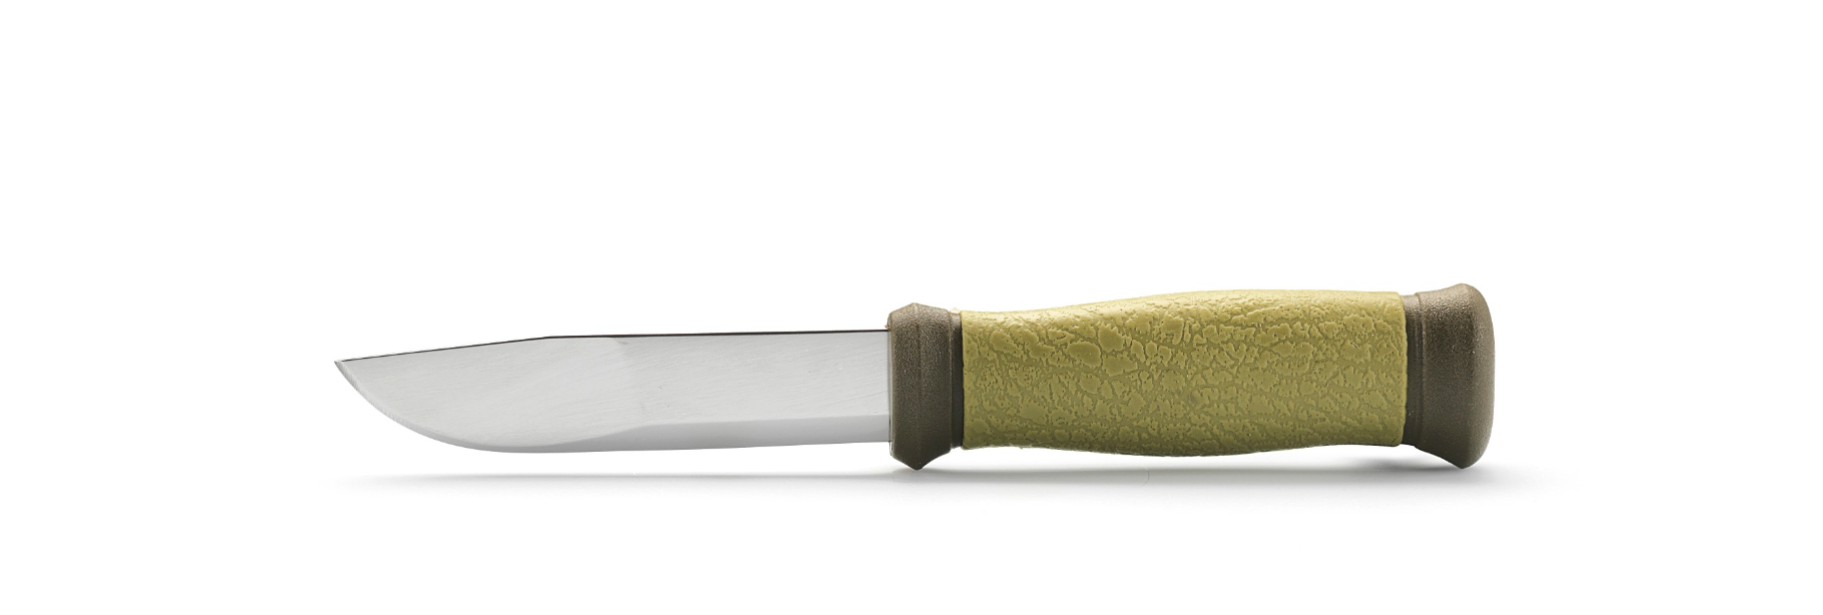 Нож с фиксированным лезвием Morakniv 2000, сталь Sandvik 12C27, рукоять пластик/резина, зеленый от Ножиков